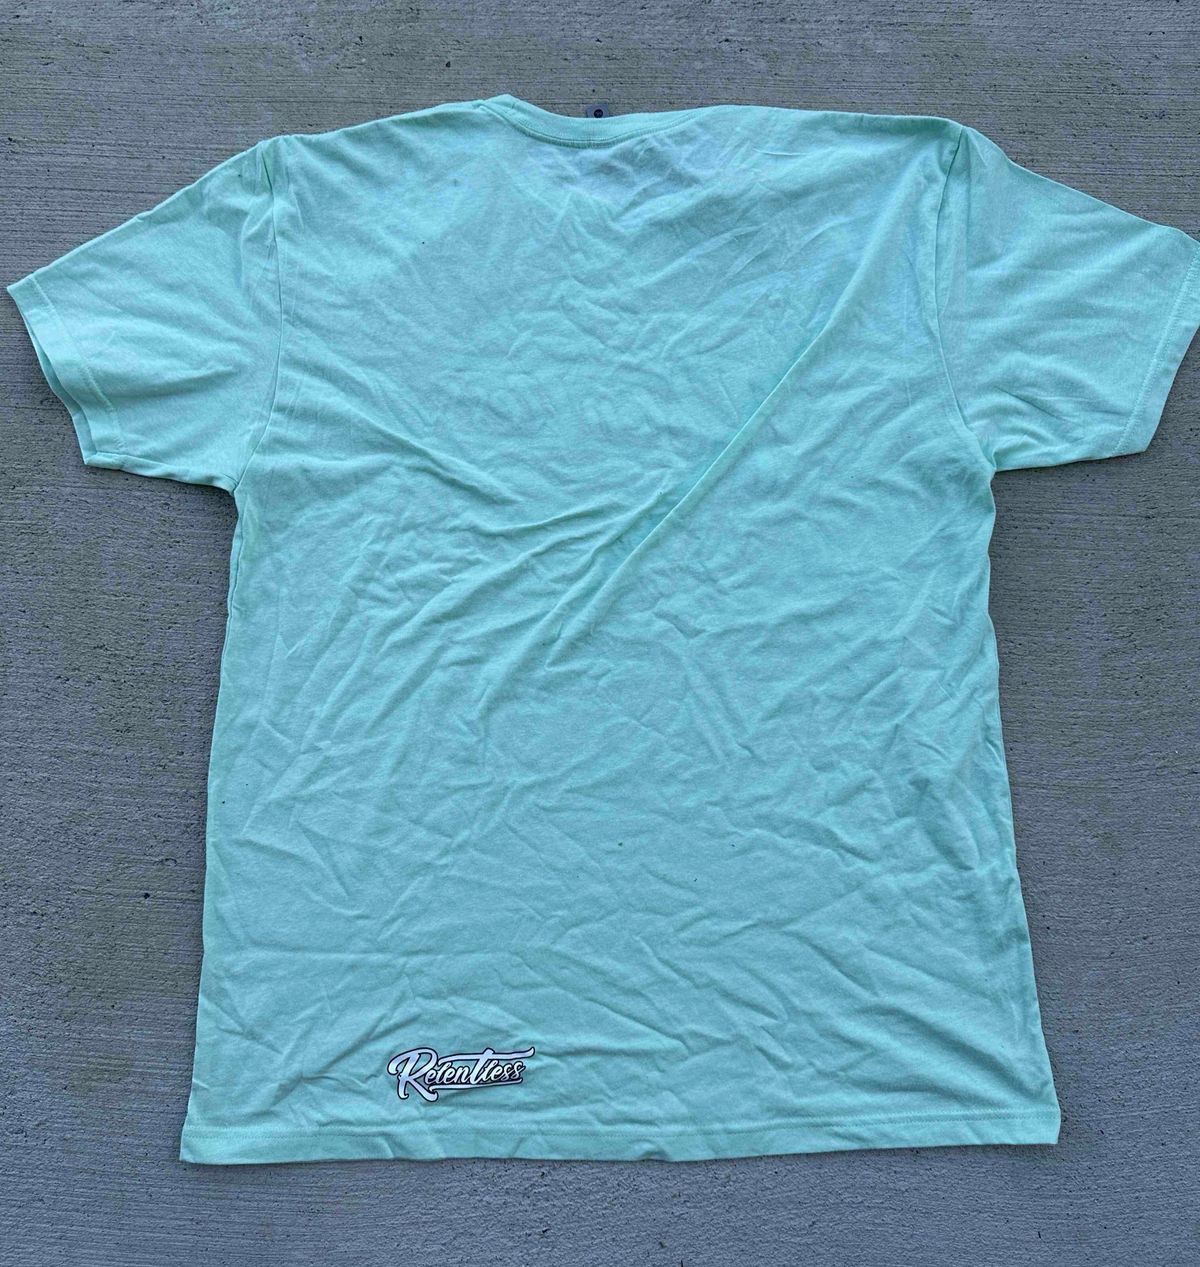 Mint Relentless T Shirt